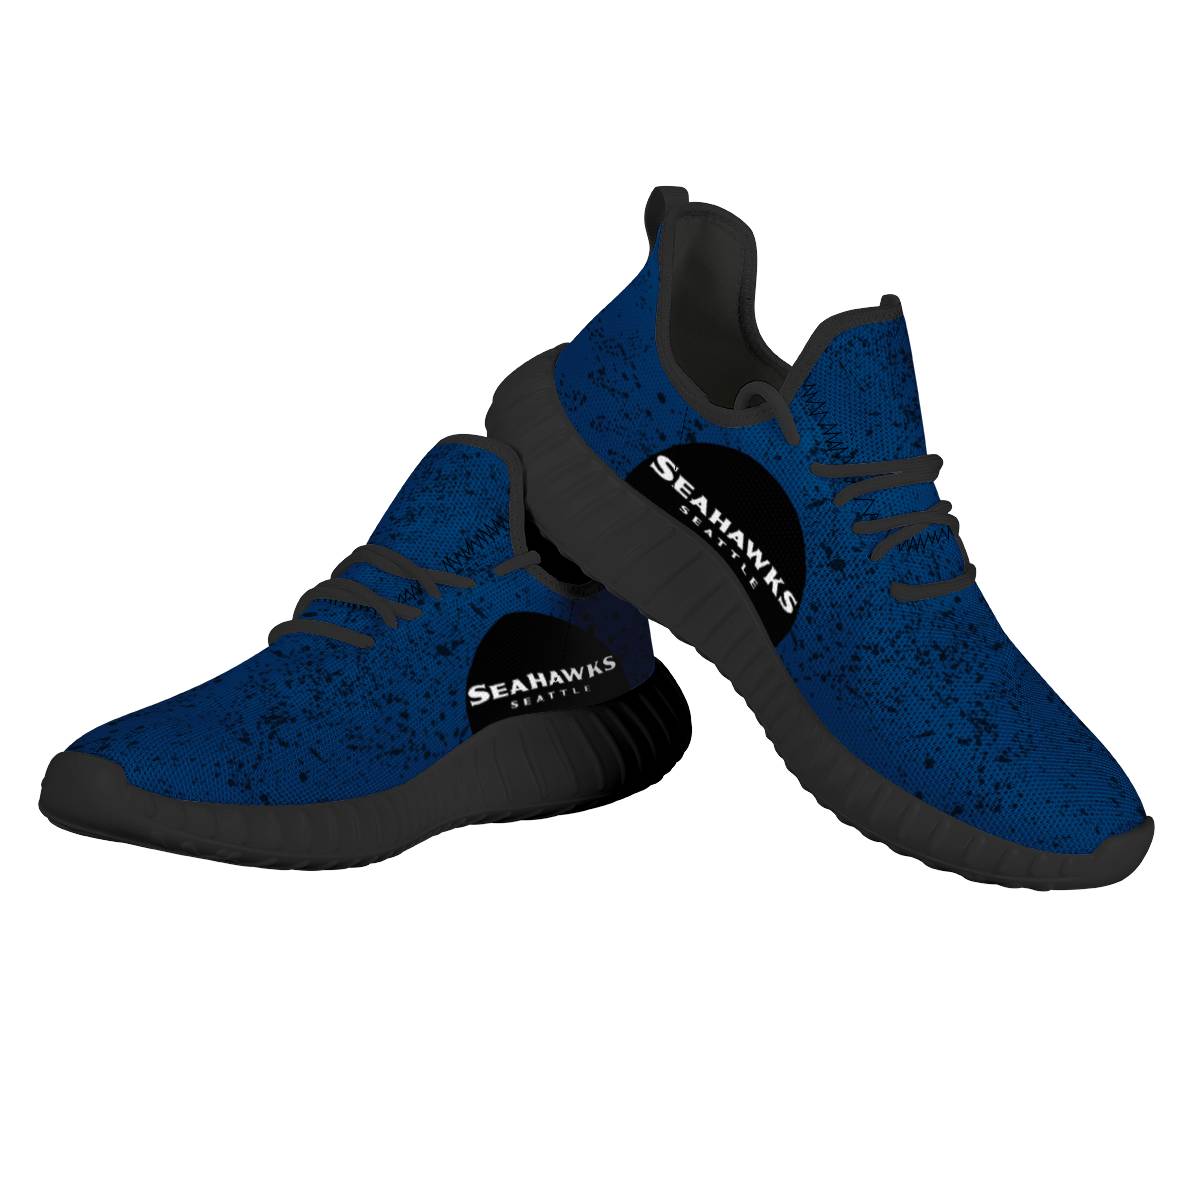 Men's Seattle Seahawks Mesh Knit Sneakers/Shoes 009